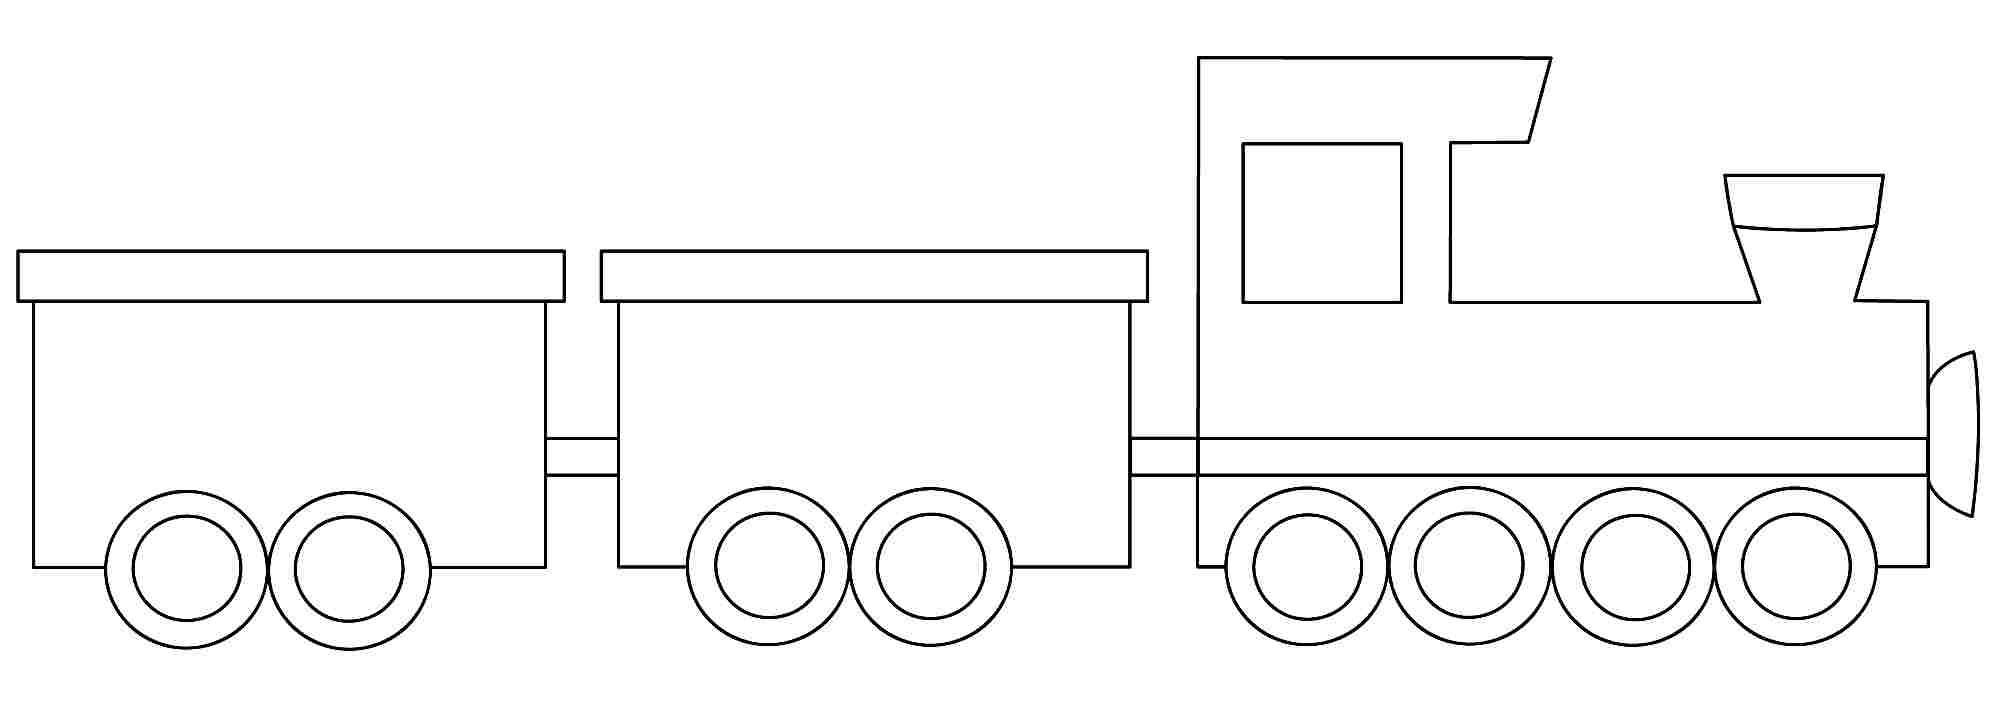 Раскраска для детей поезд с вагончиками